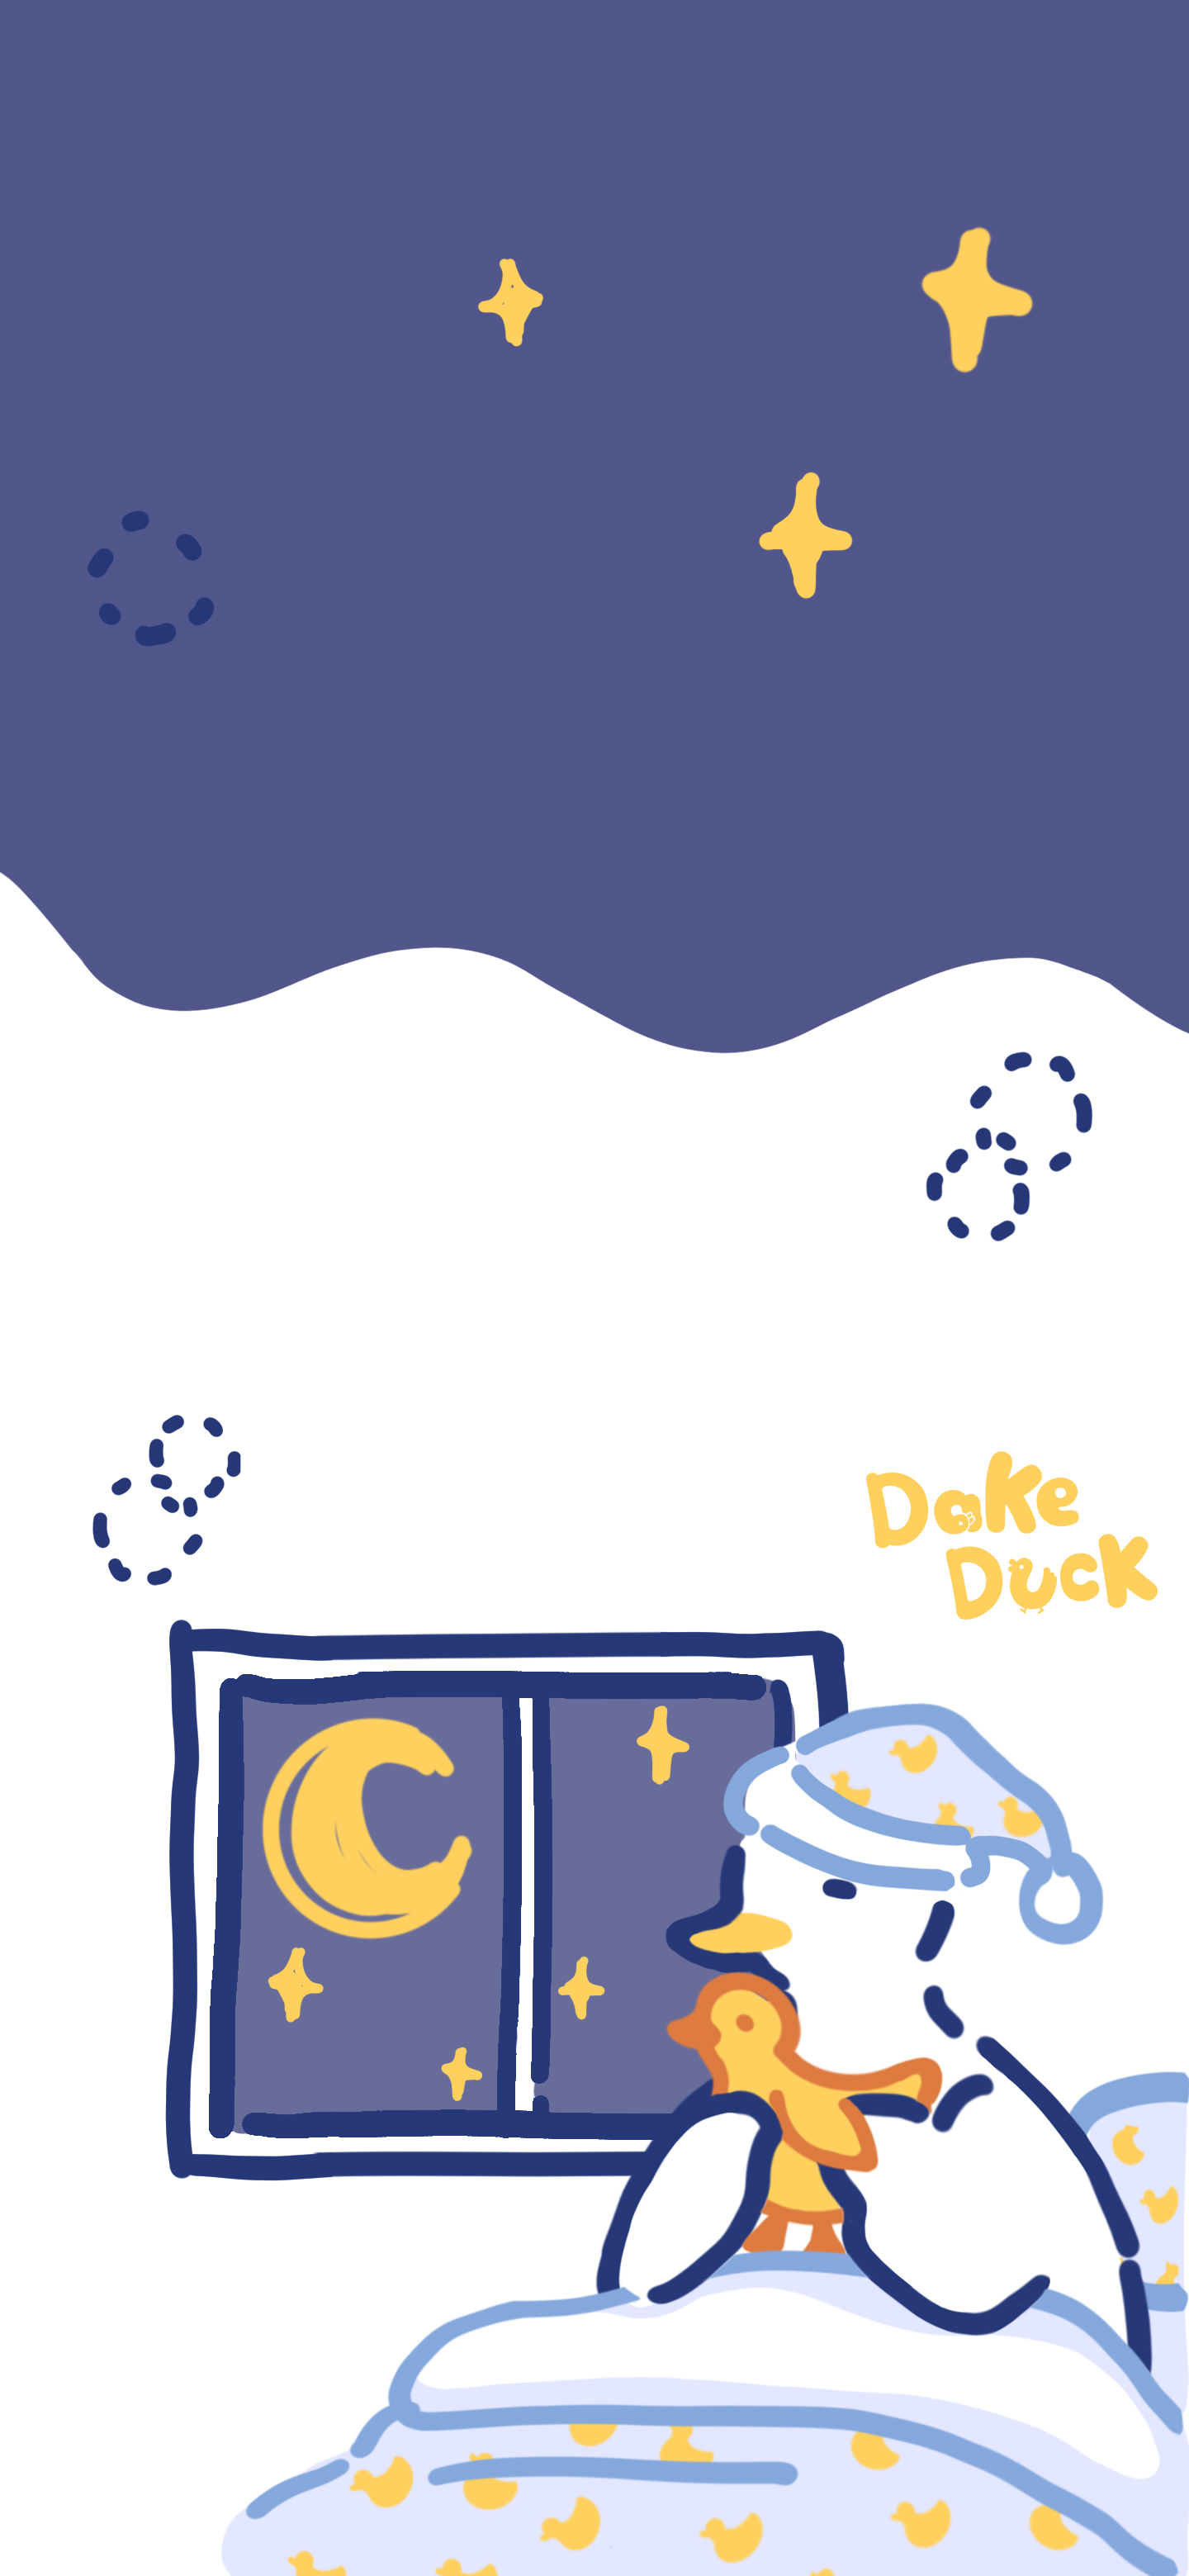 dake duck - 堆糖,美图壁纸兴趣社区